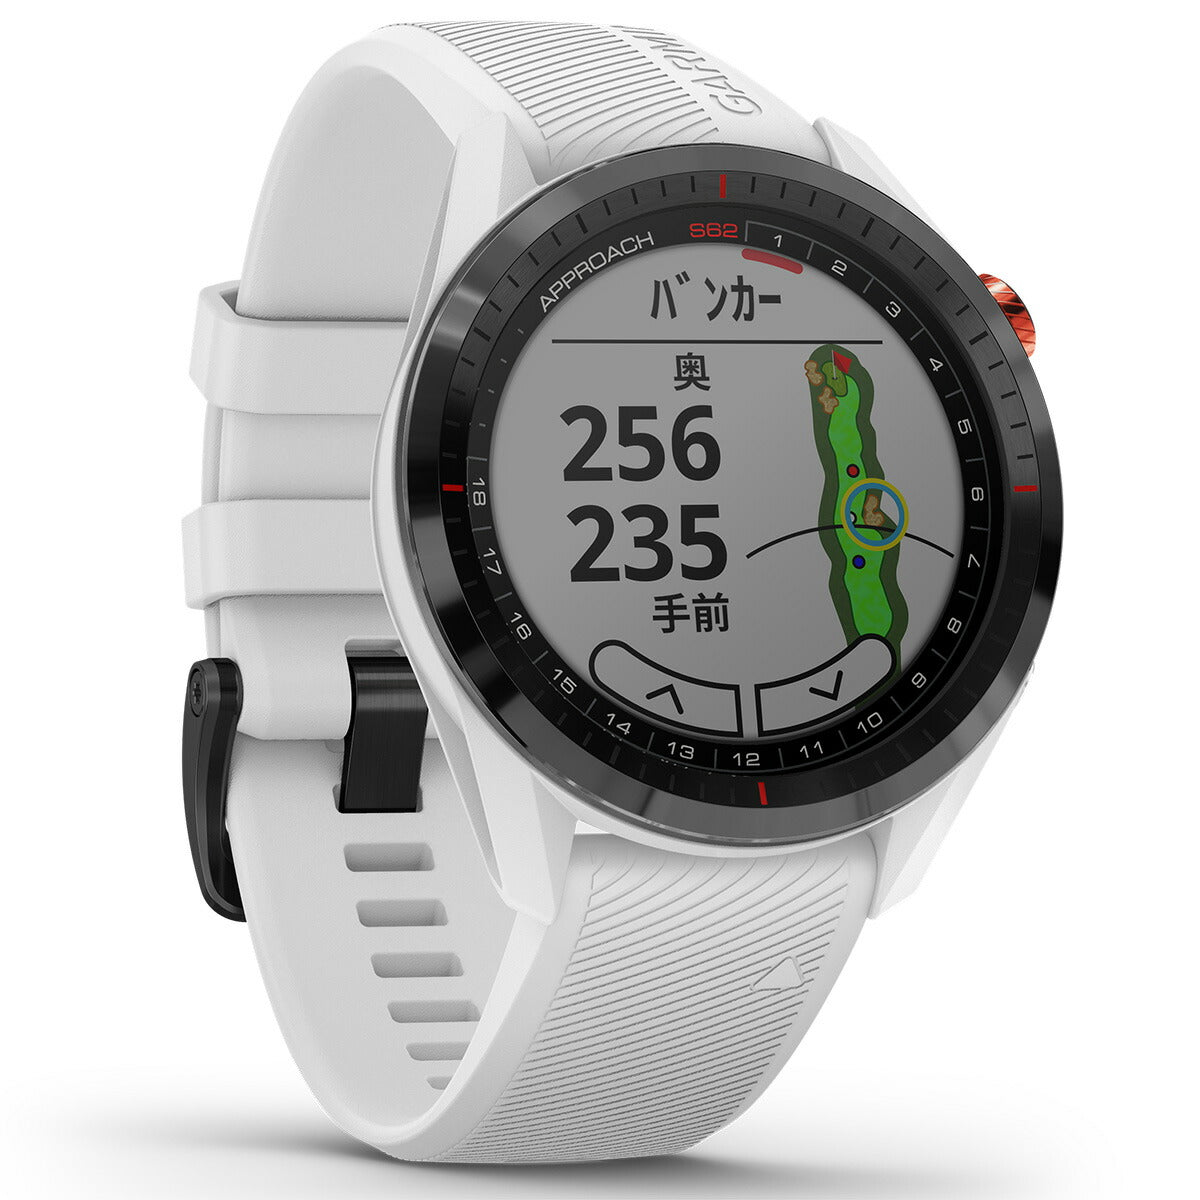 ガーミン GARMIN Approach S62 アプローチ S62 GPS ゴルフウォッチ スマートウォッチ ウェアラブル 腕時計 メンズ レディース ホワイト 010-02200-21